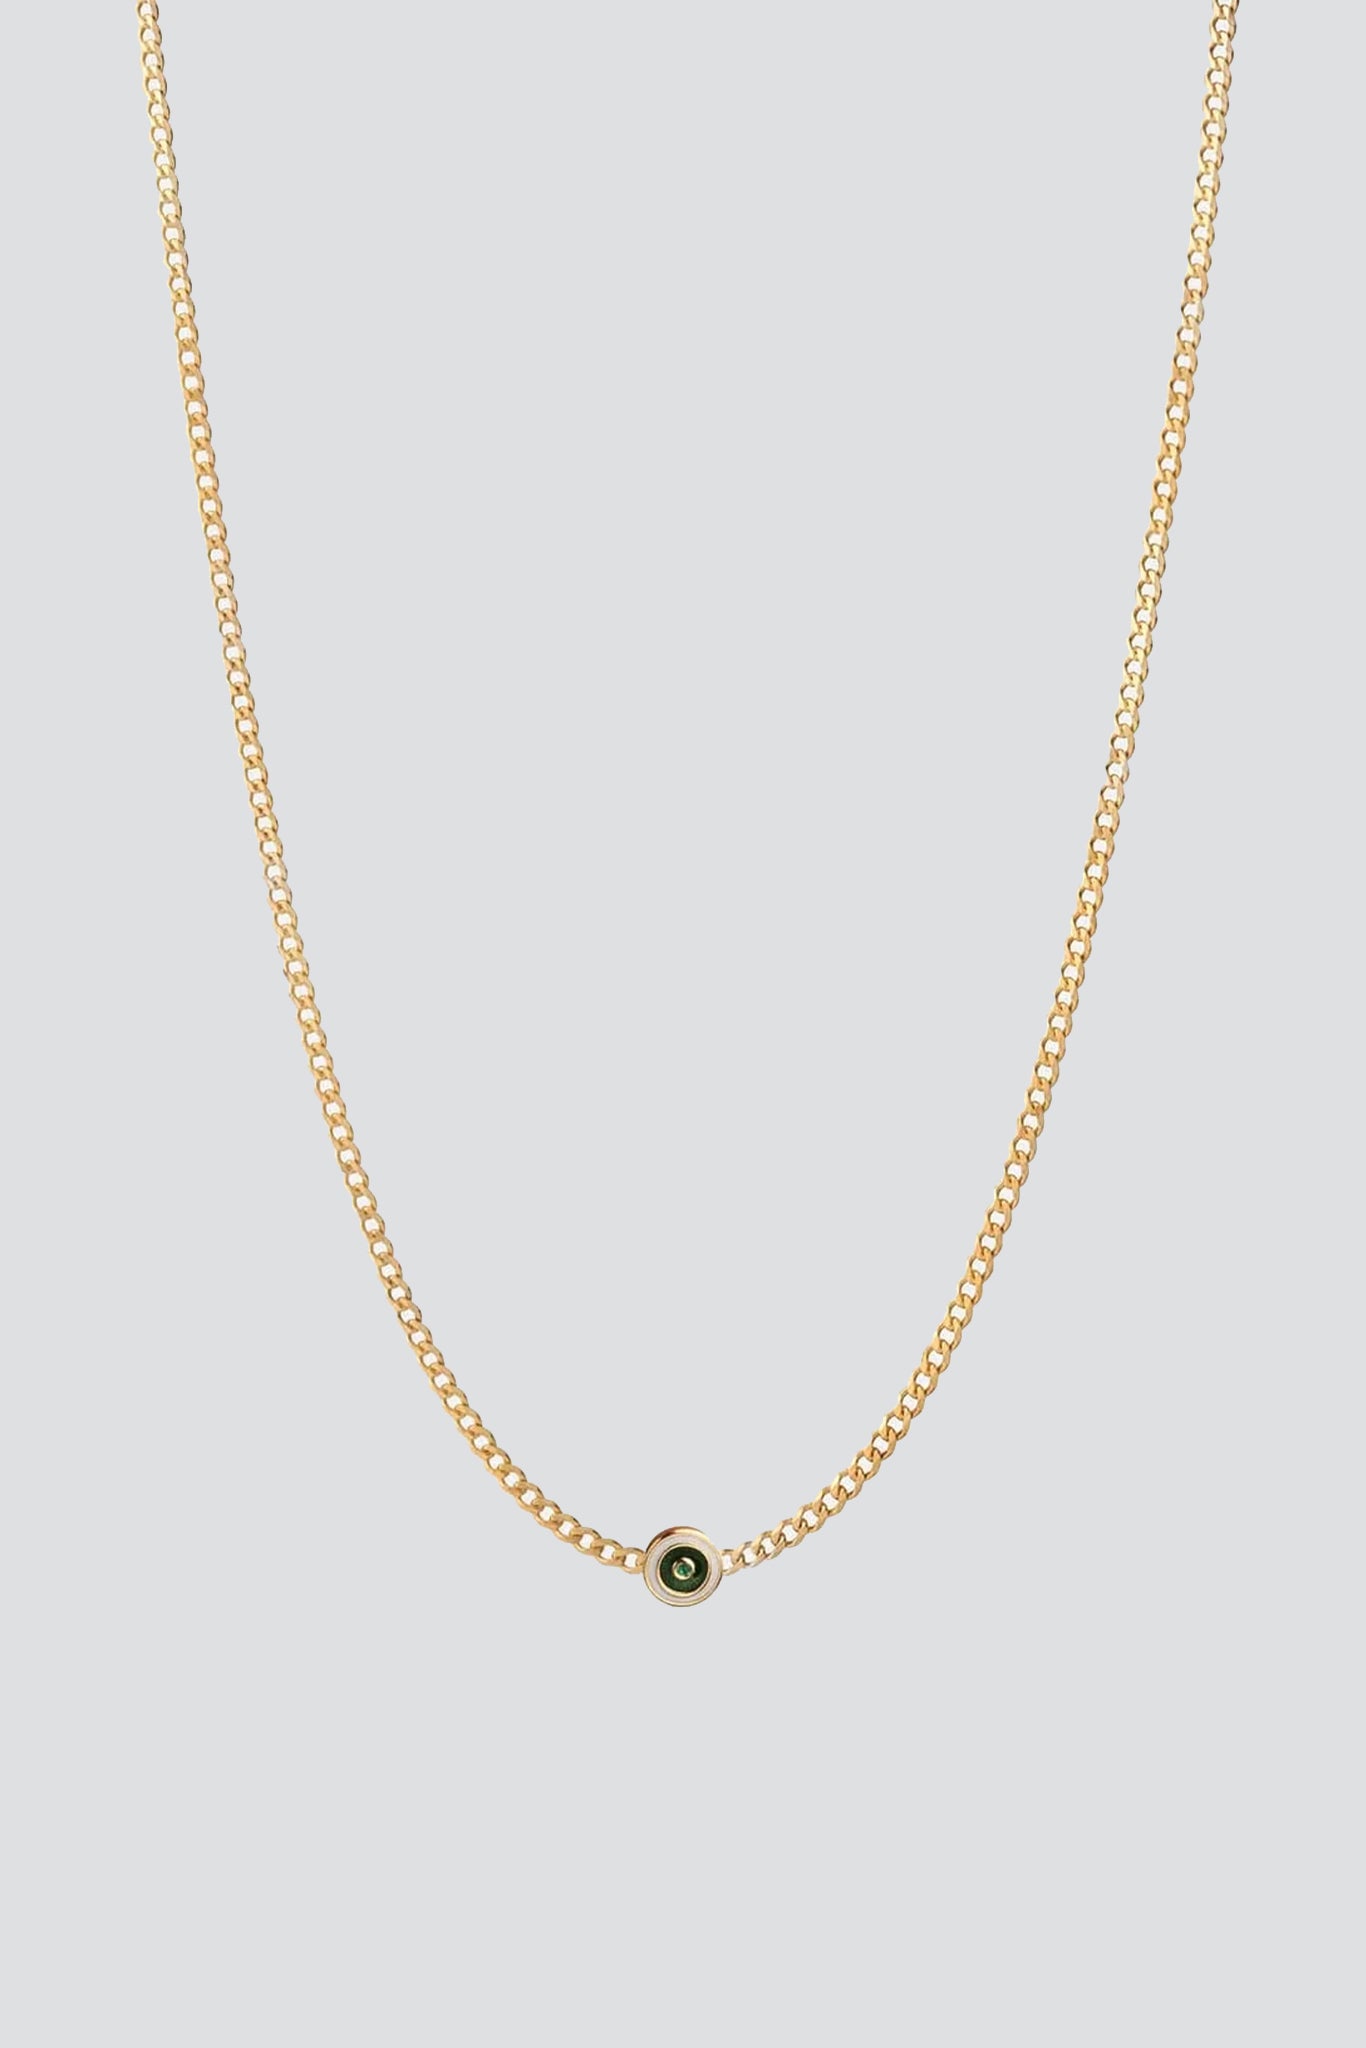 Rope Chain Necklace - Gold Vermeil - Oak & Luna